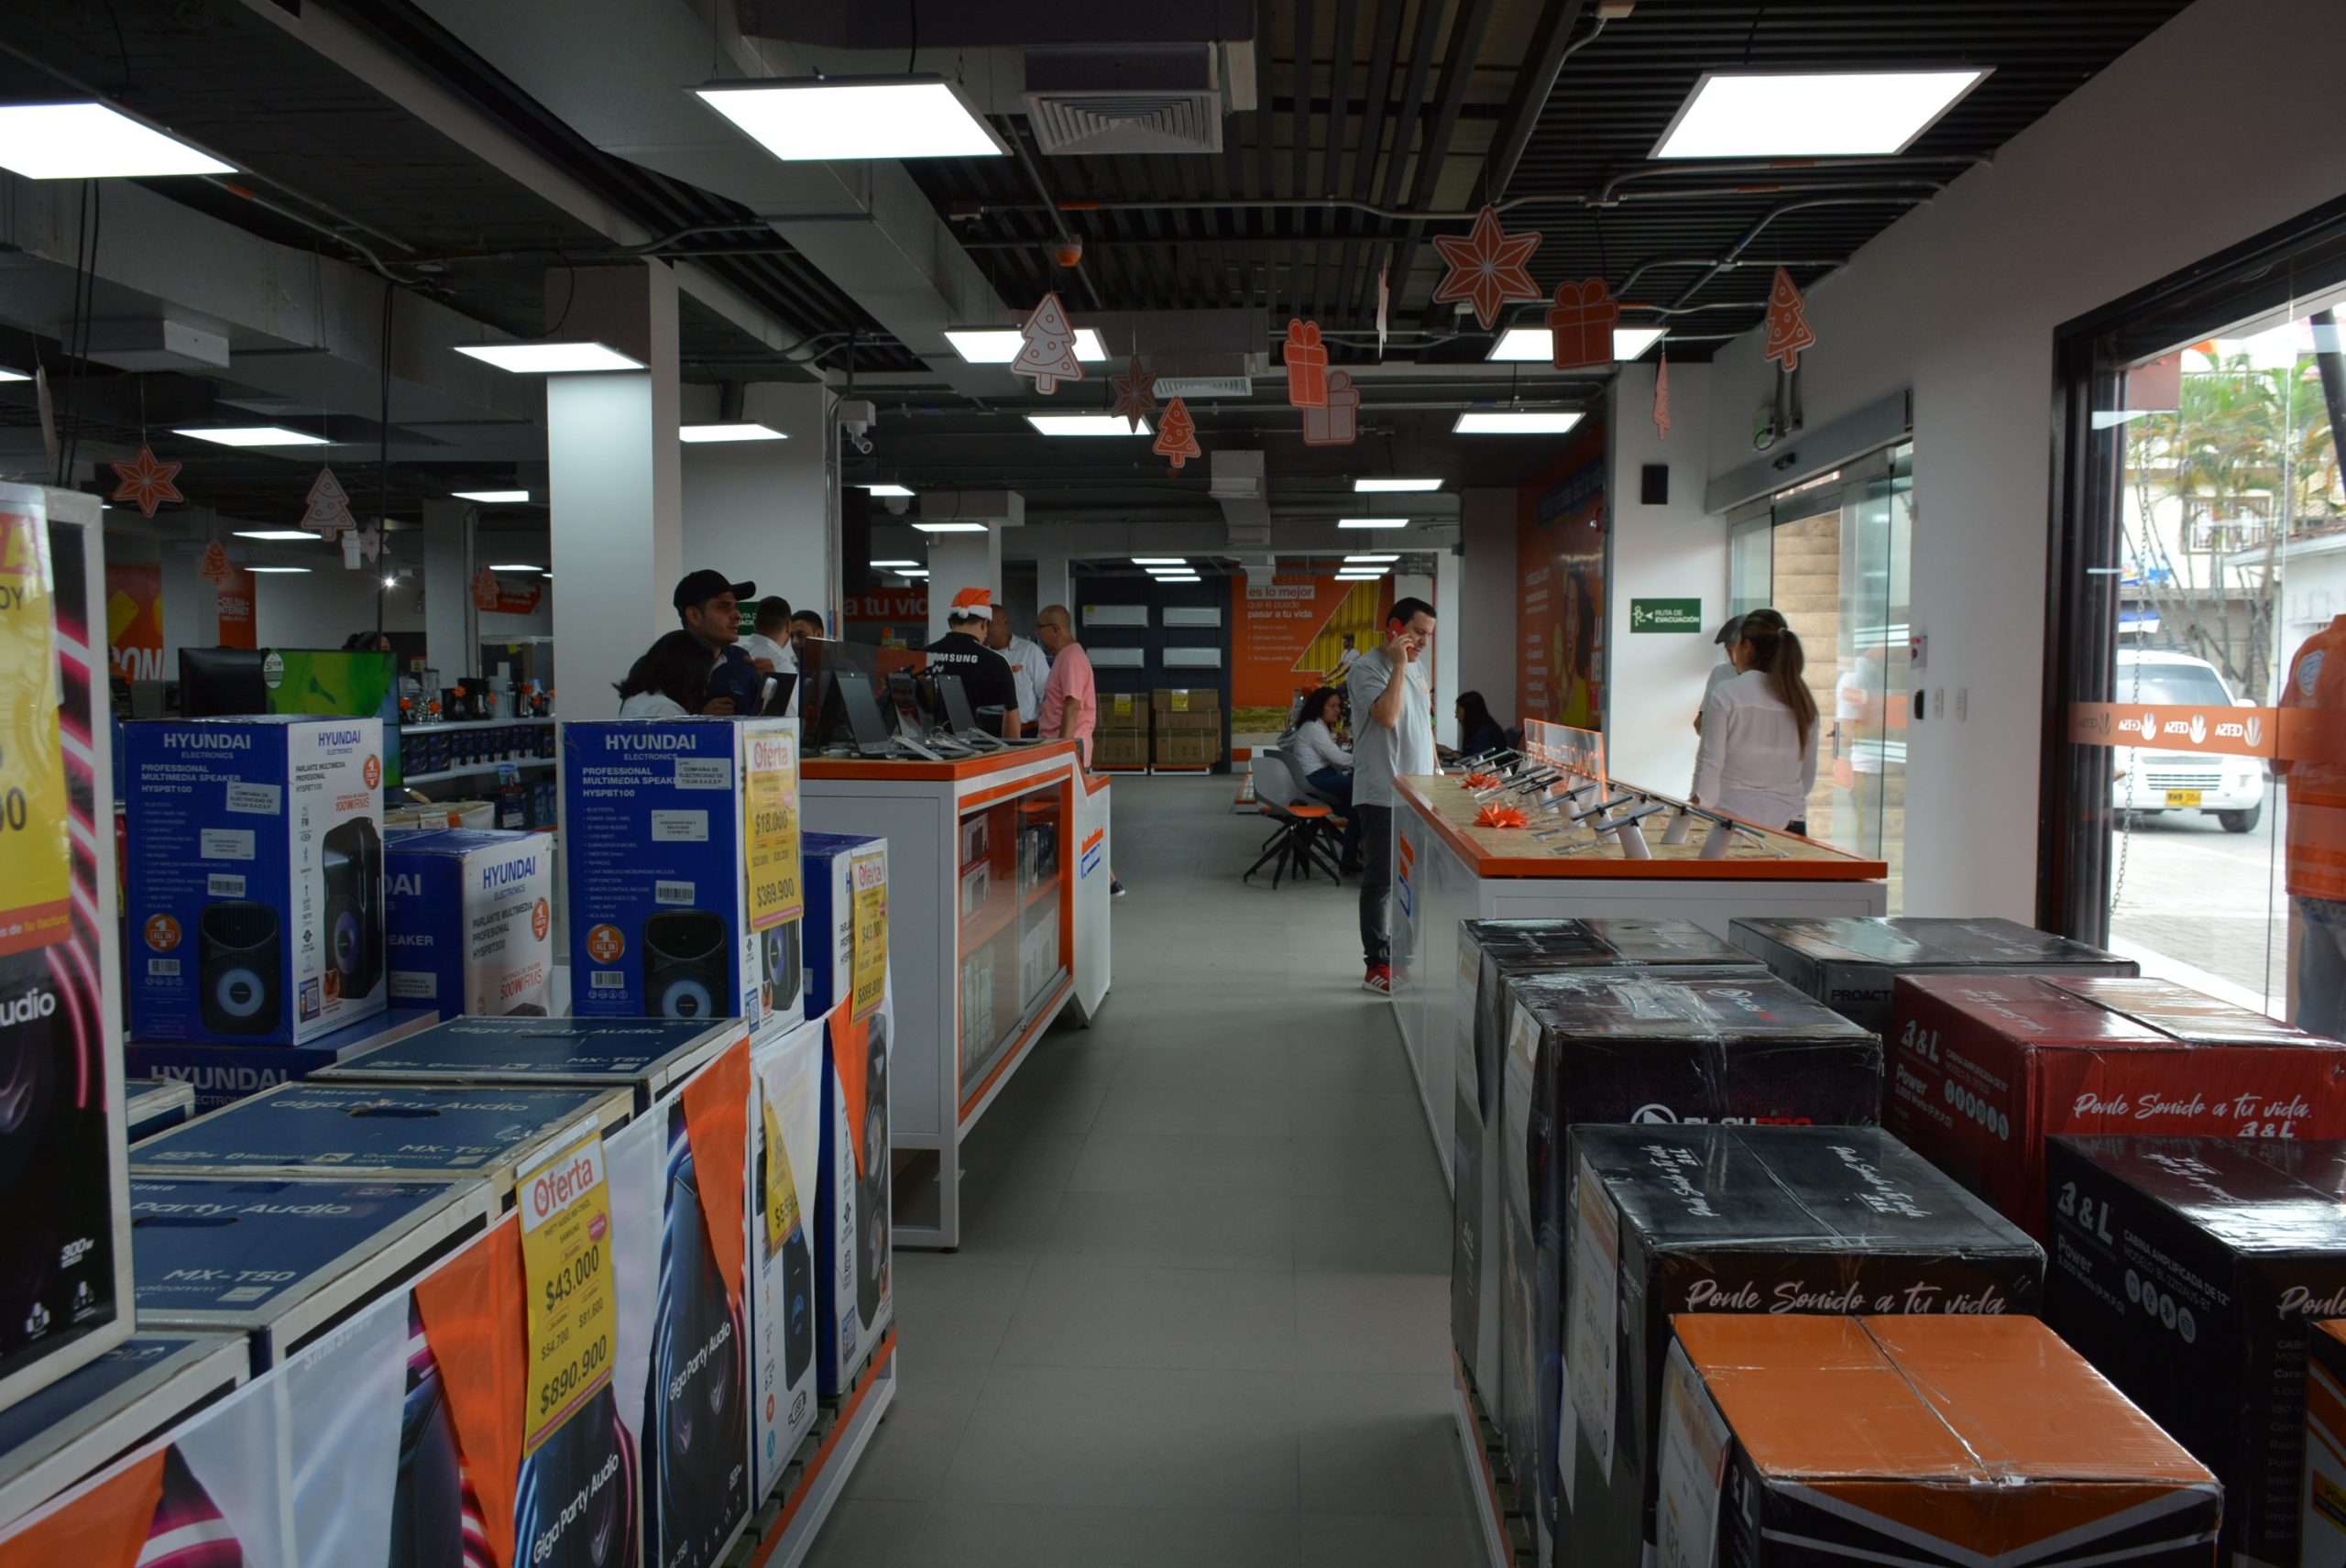 Cetsa amplió y renovó completamente su tienda en Tuluá para seguir mejorando la atención y los servicios ofrecidos a los clientes